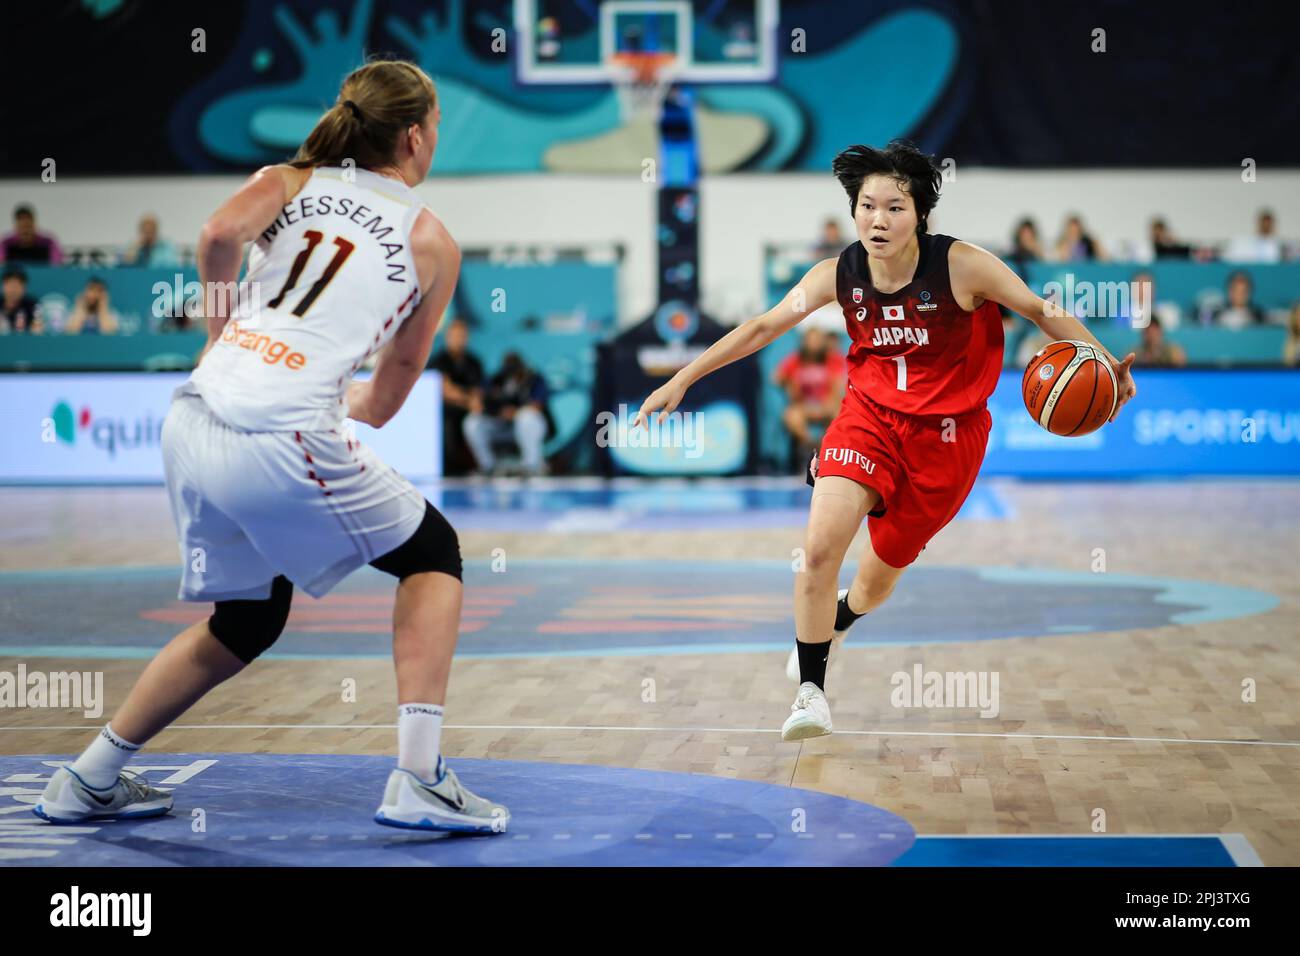 Espagne, Ténérife, 23 septembre 2018: Une joueuse de basket-ball féminine Manami Fujioka en action pendant la coupe du monde de basket-ball féminine FIBA Banque D'Images